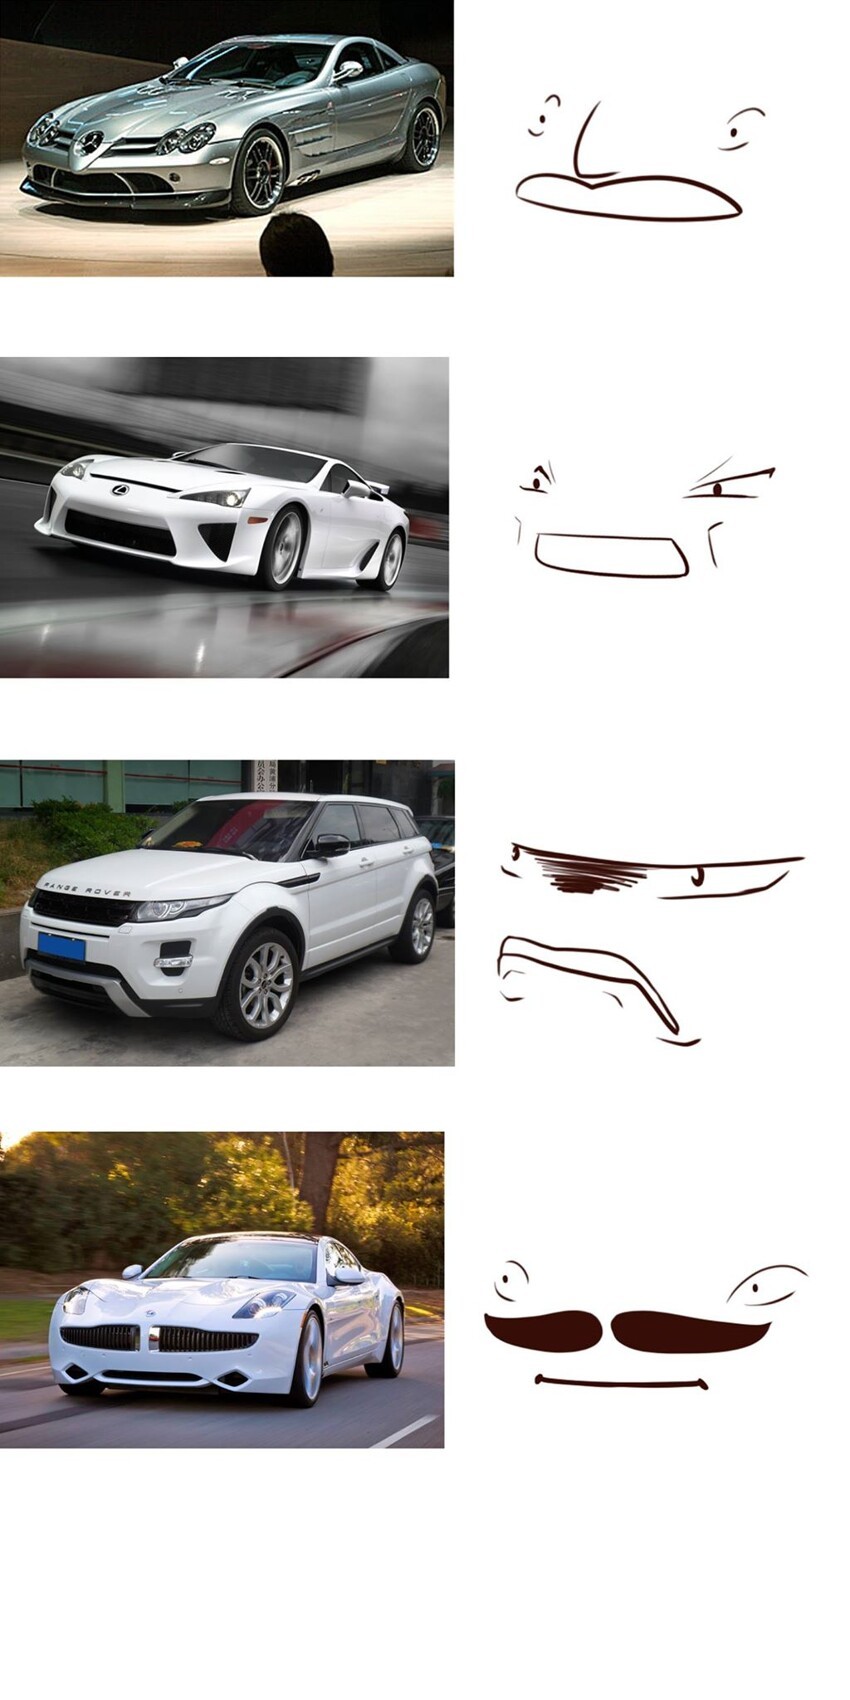 У каждого автомобиля есть свое лицо